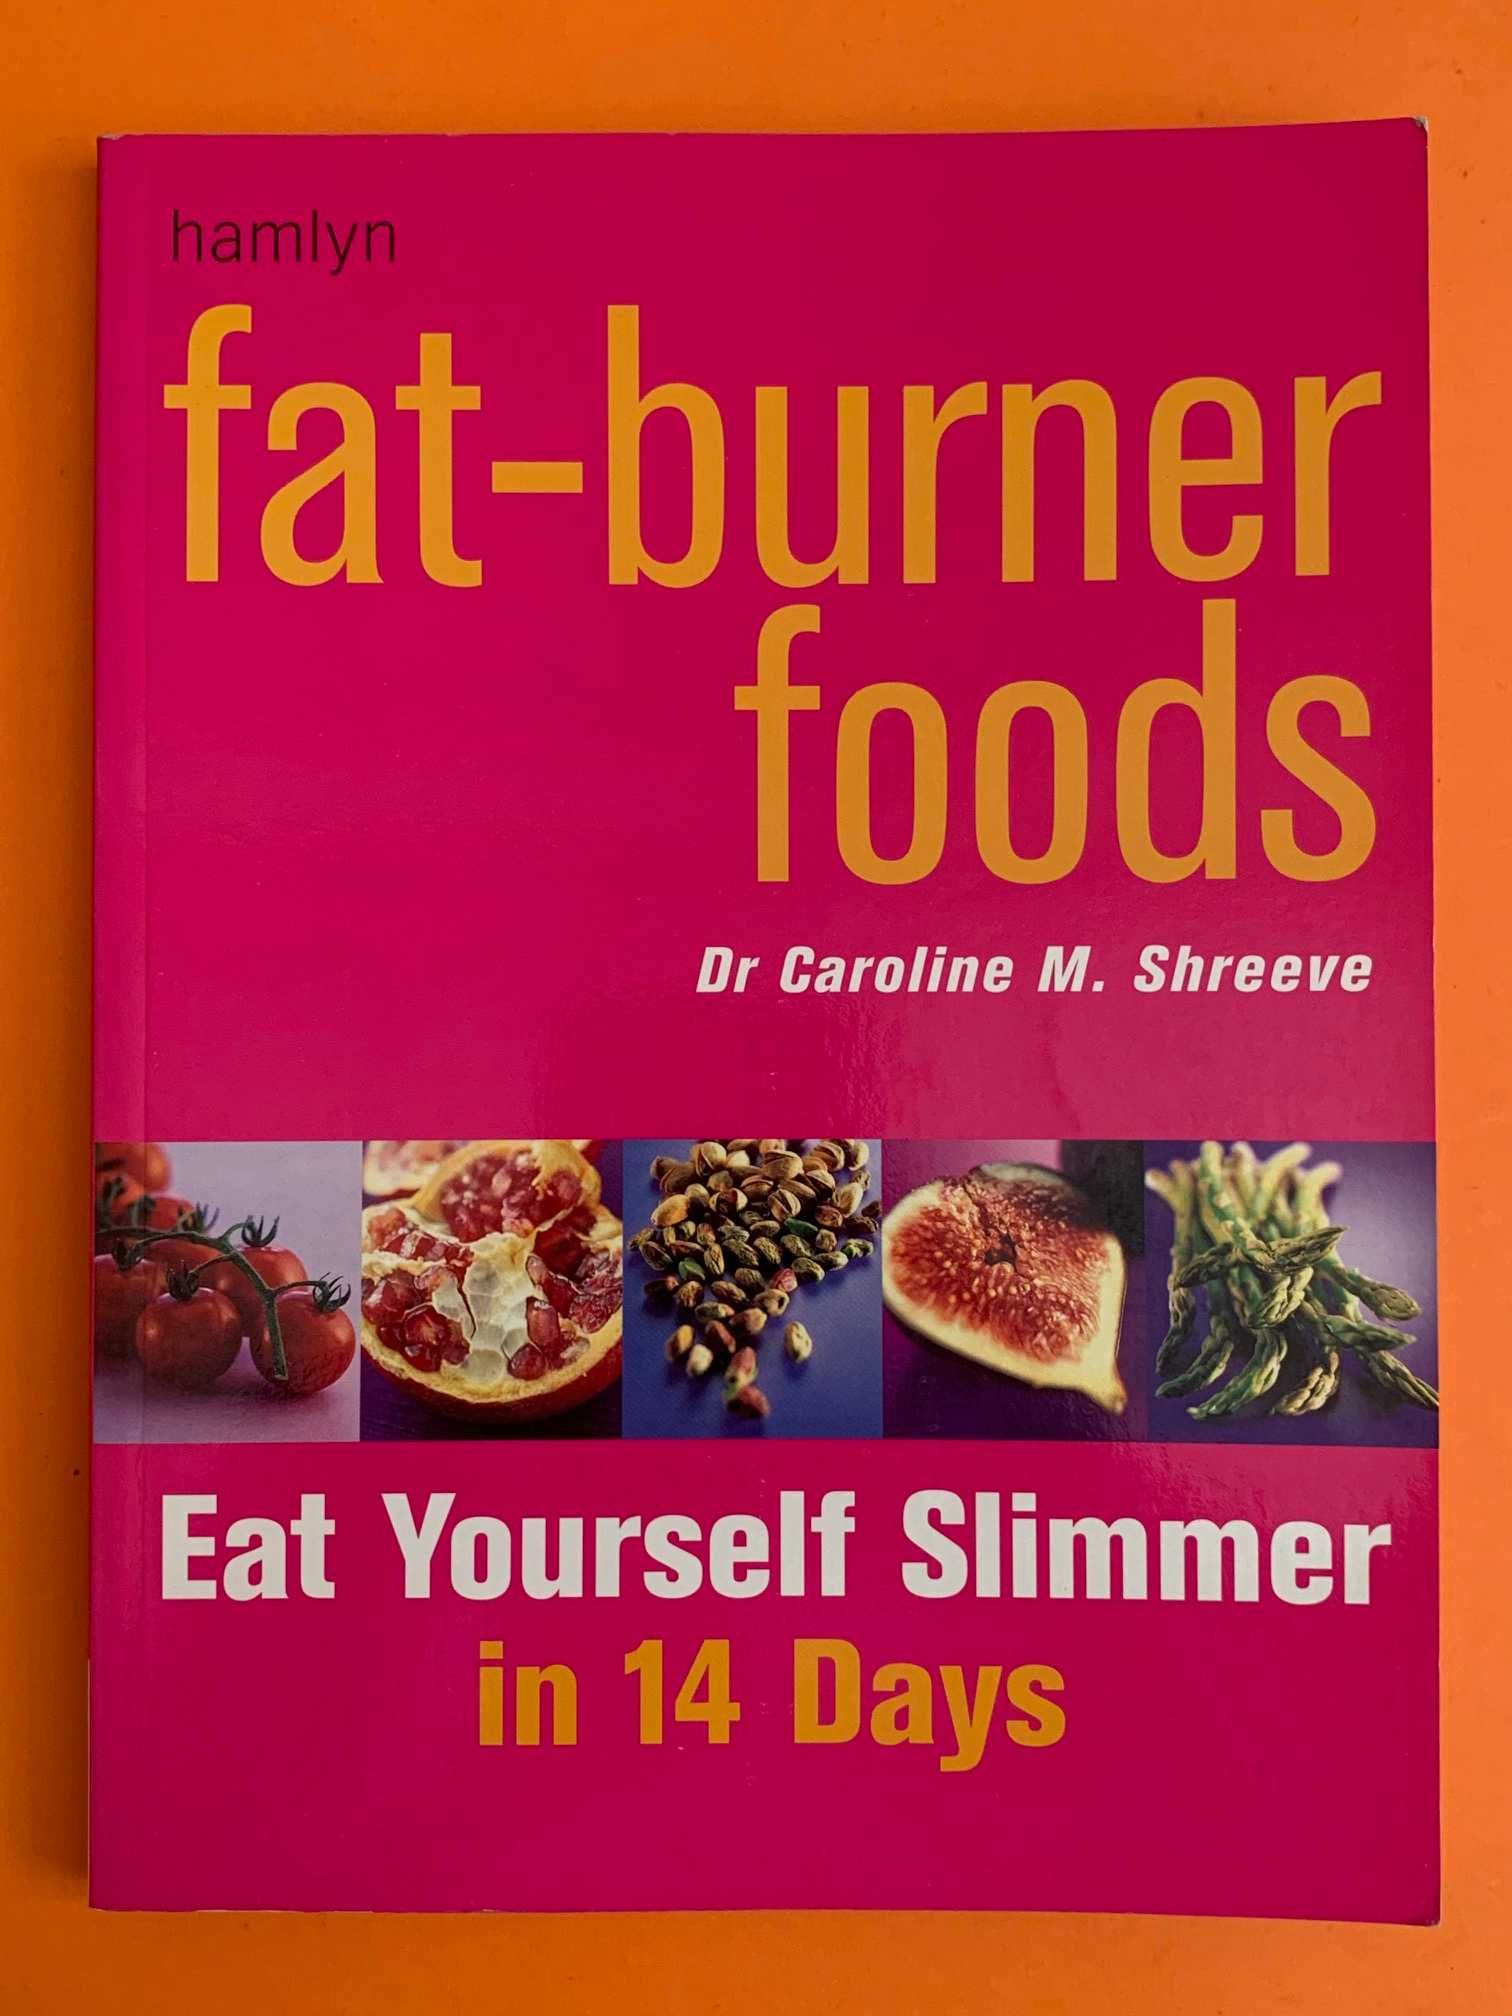 Fat-burner foods - Dr. Caroline M. Shreeve